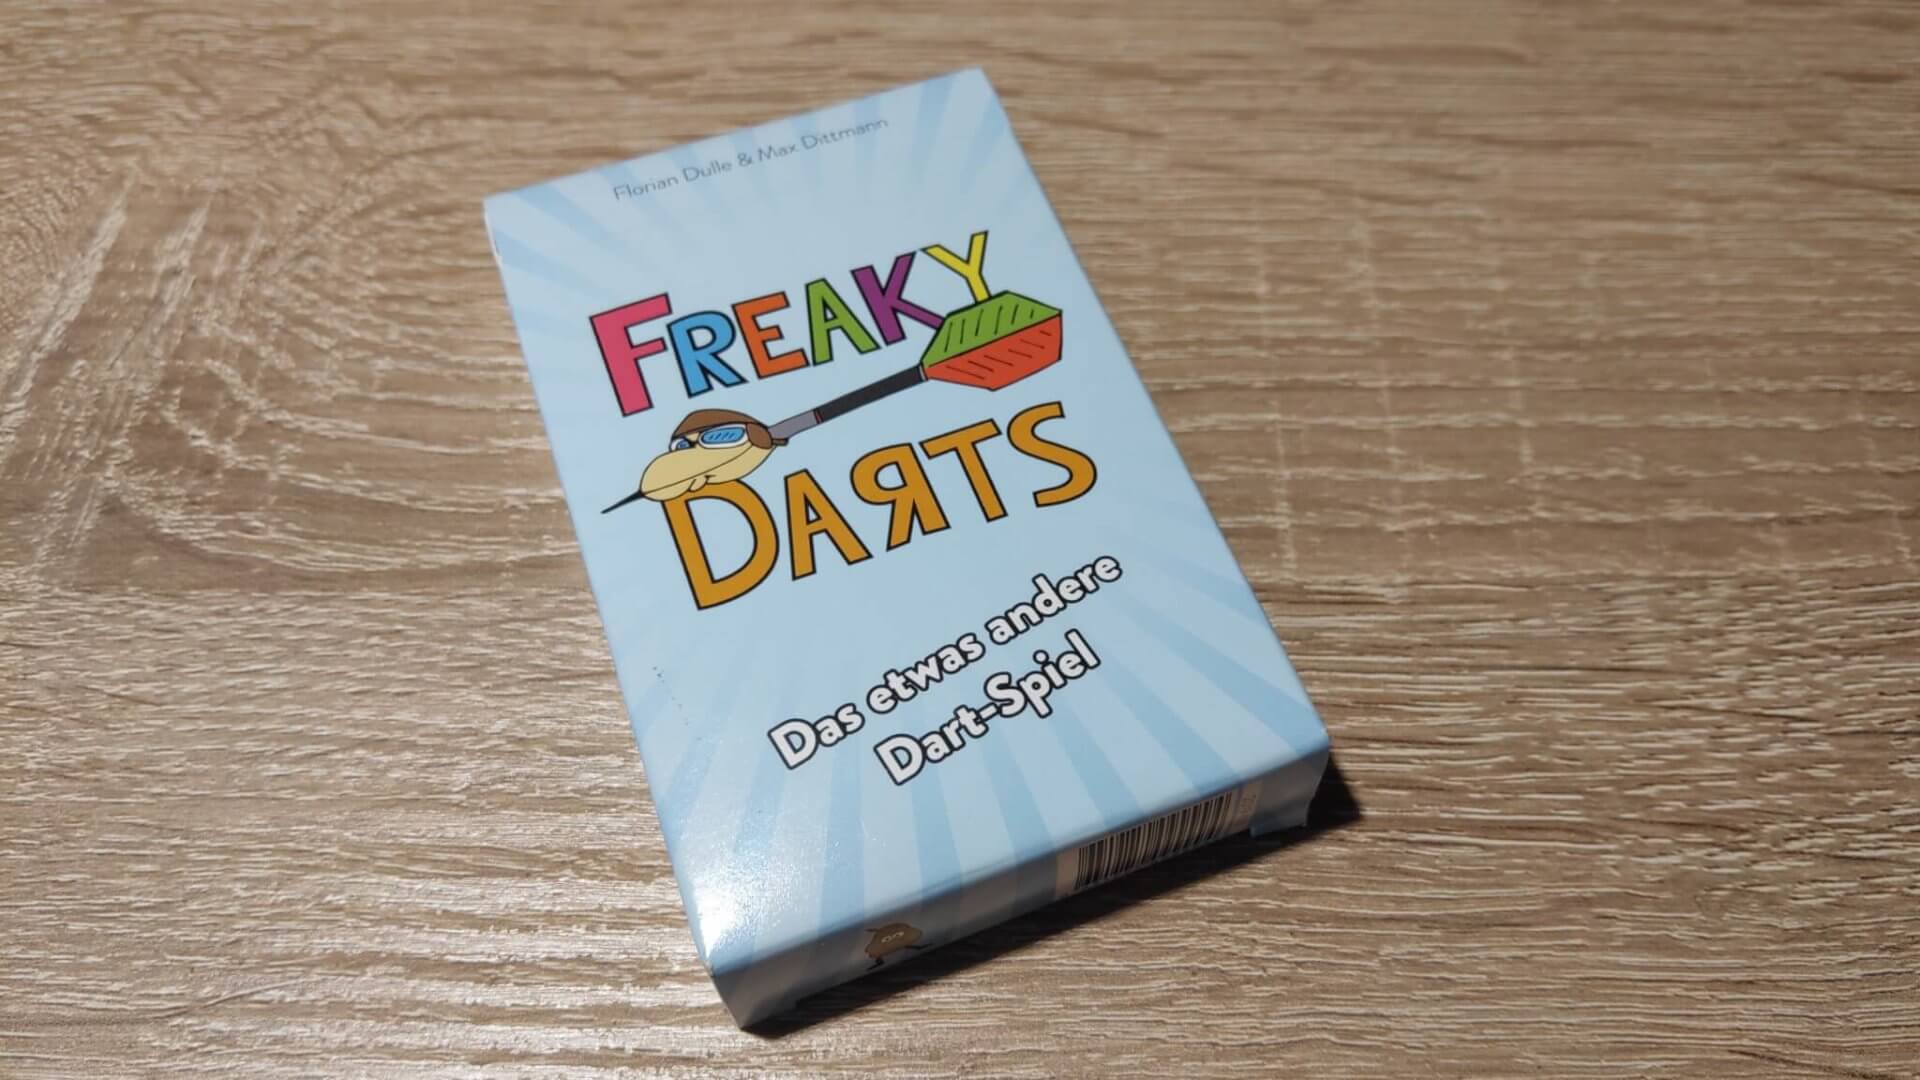 DartSturm.de - Freaky Darts - Kartenspiel